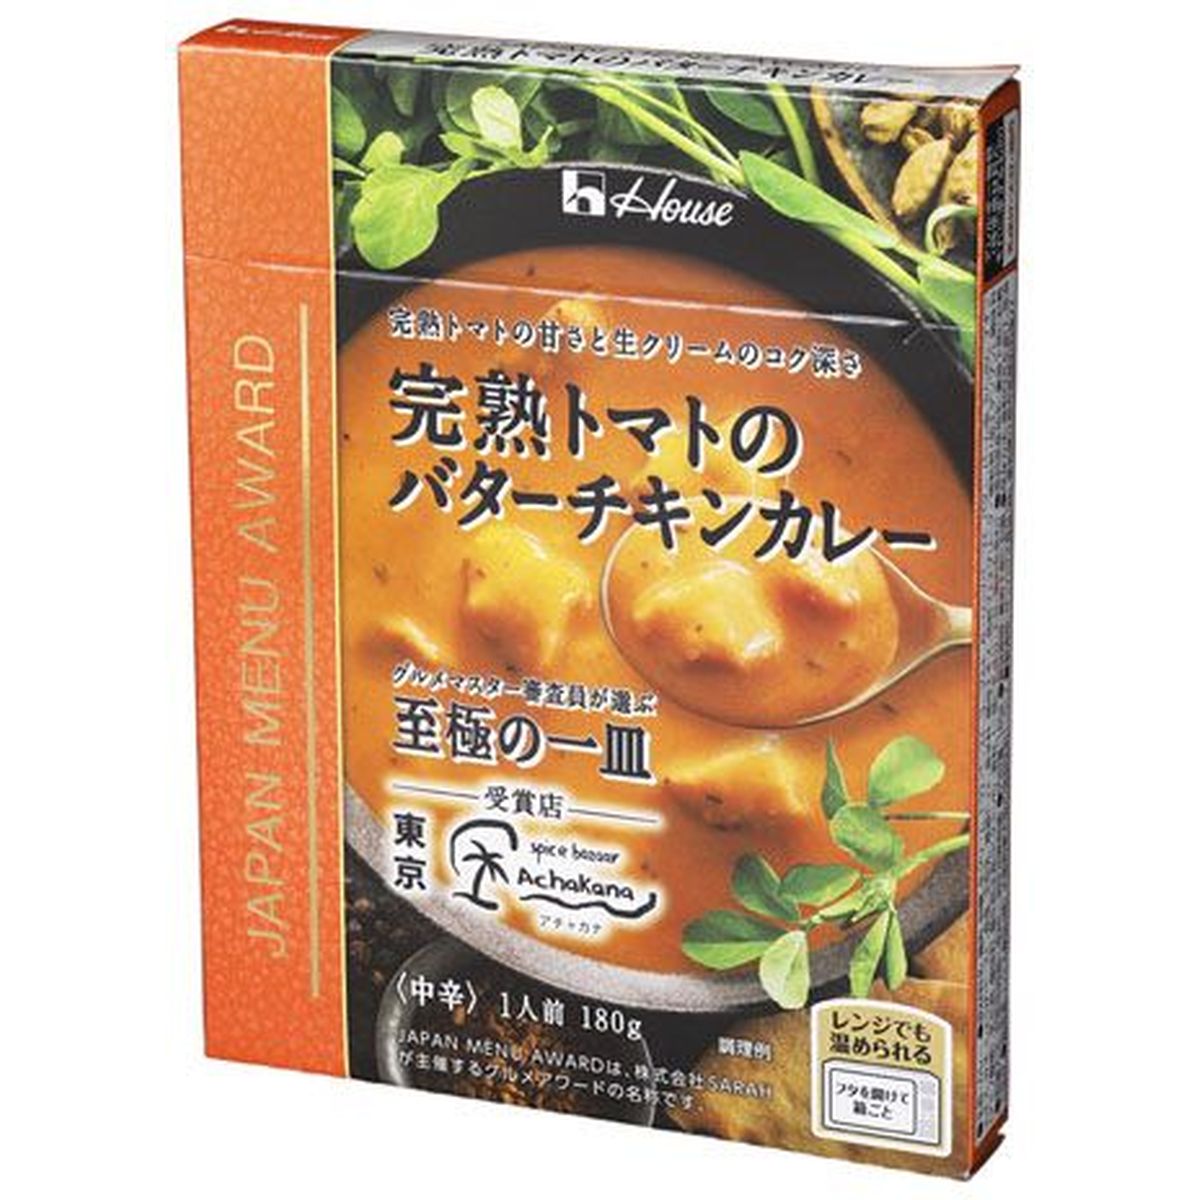 【10個入リ】ハウス ジャパン メニュー 完熟ノトマトノバターチキンカレー 180g